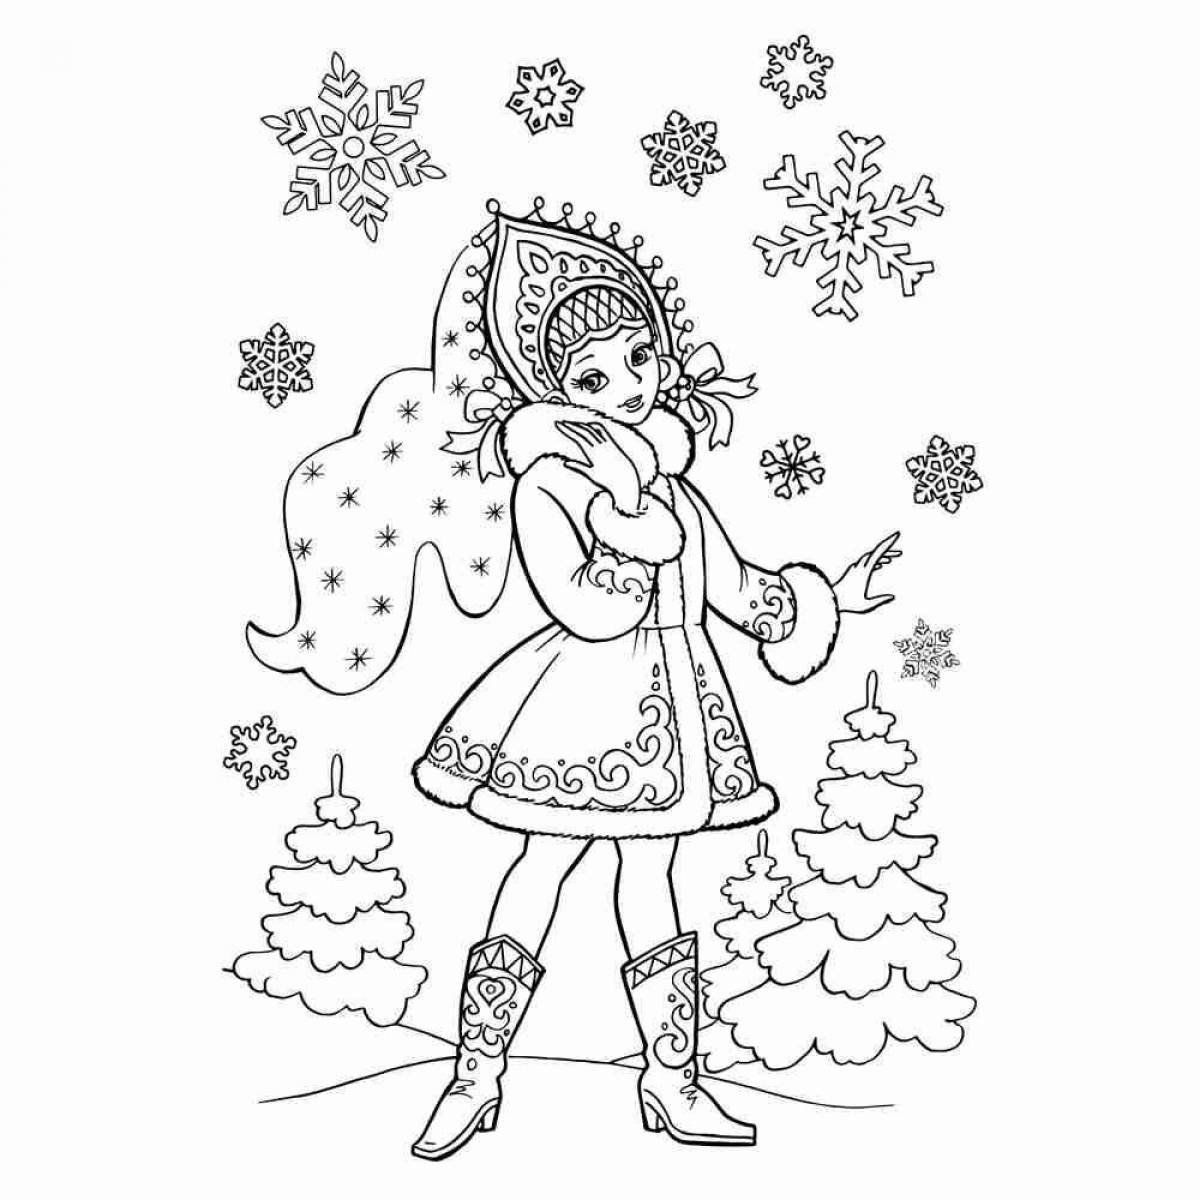 Exquisite snow maiden coloring book